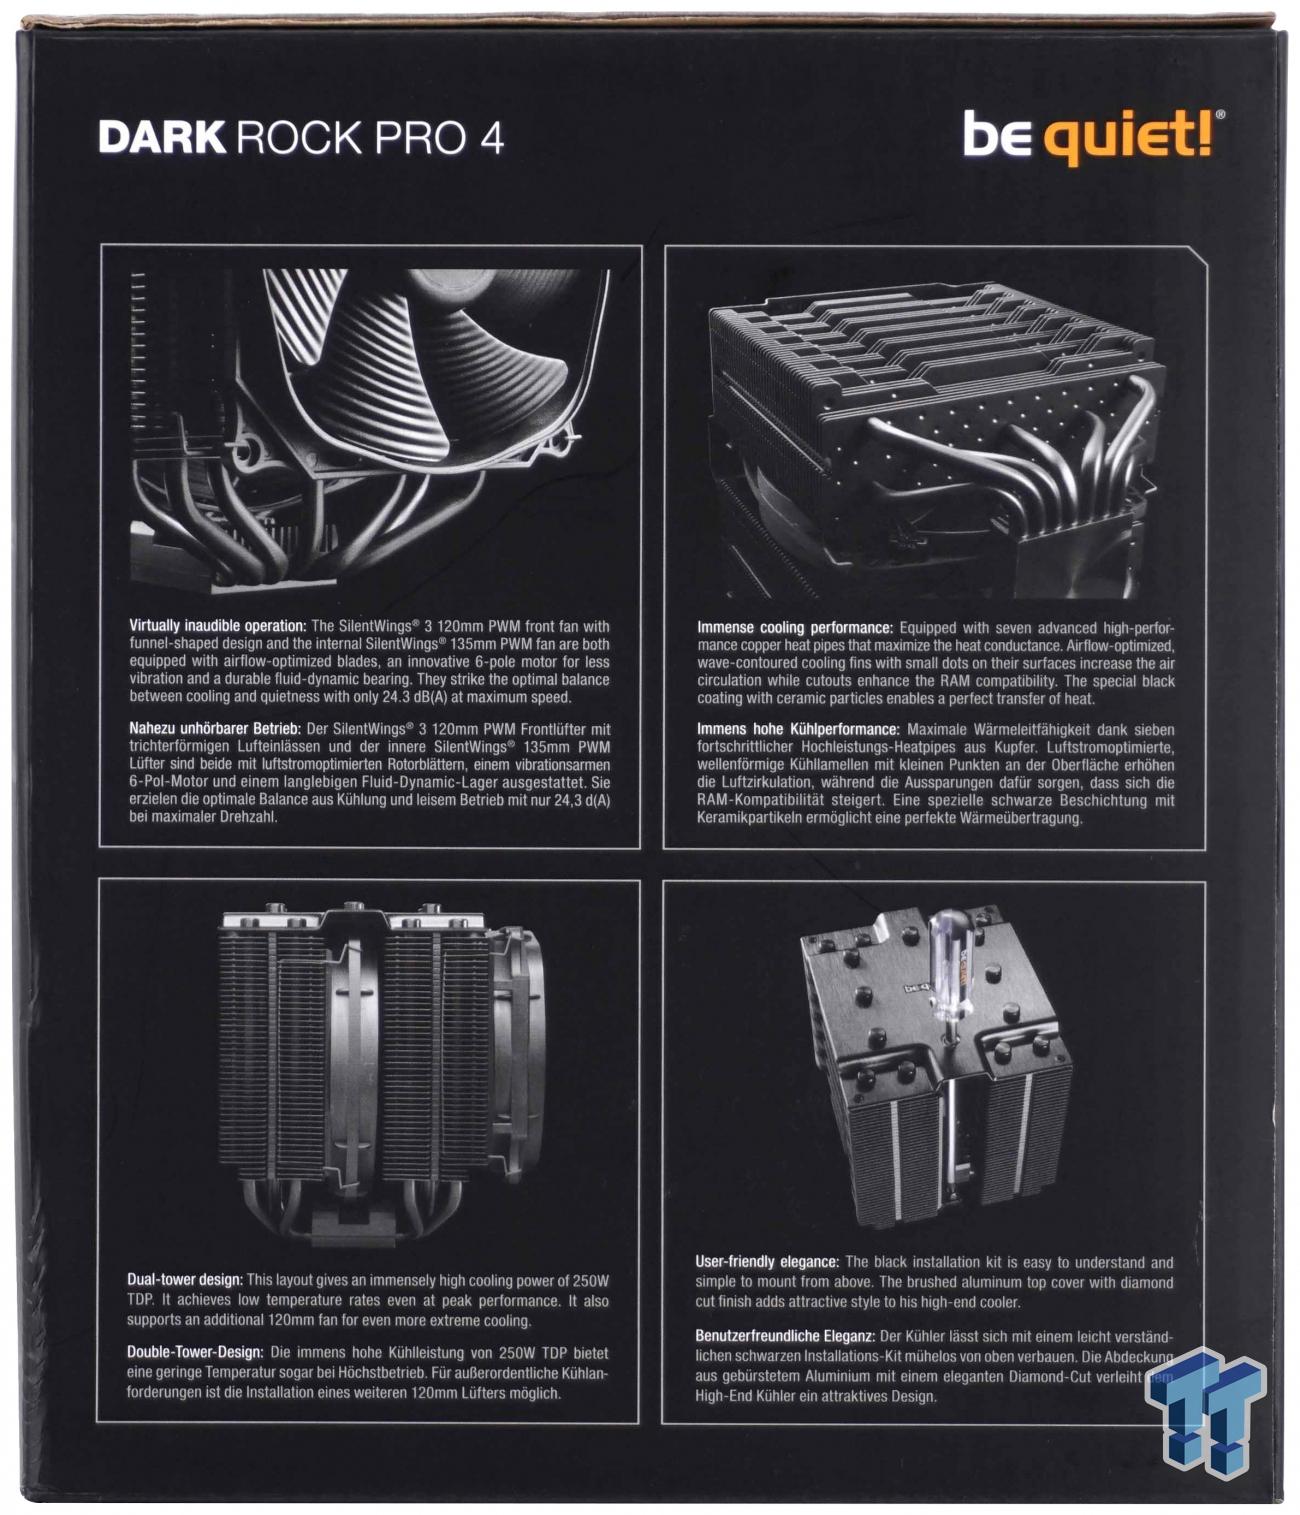 be quiet! Dark Rock Pro 4, BK022, 250W TDP, CPU Cooler